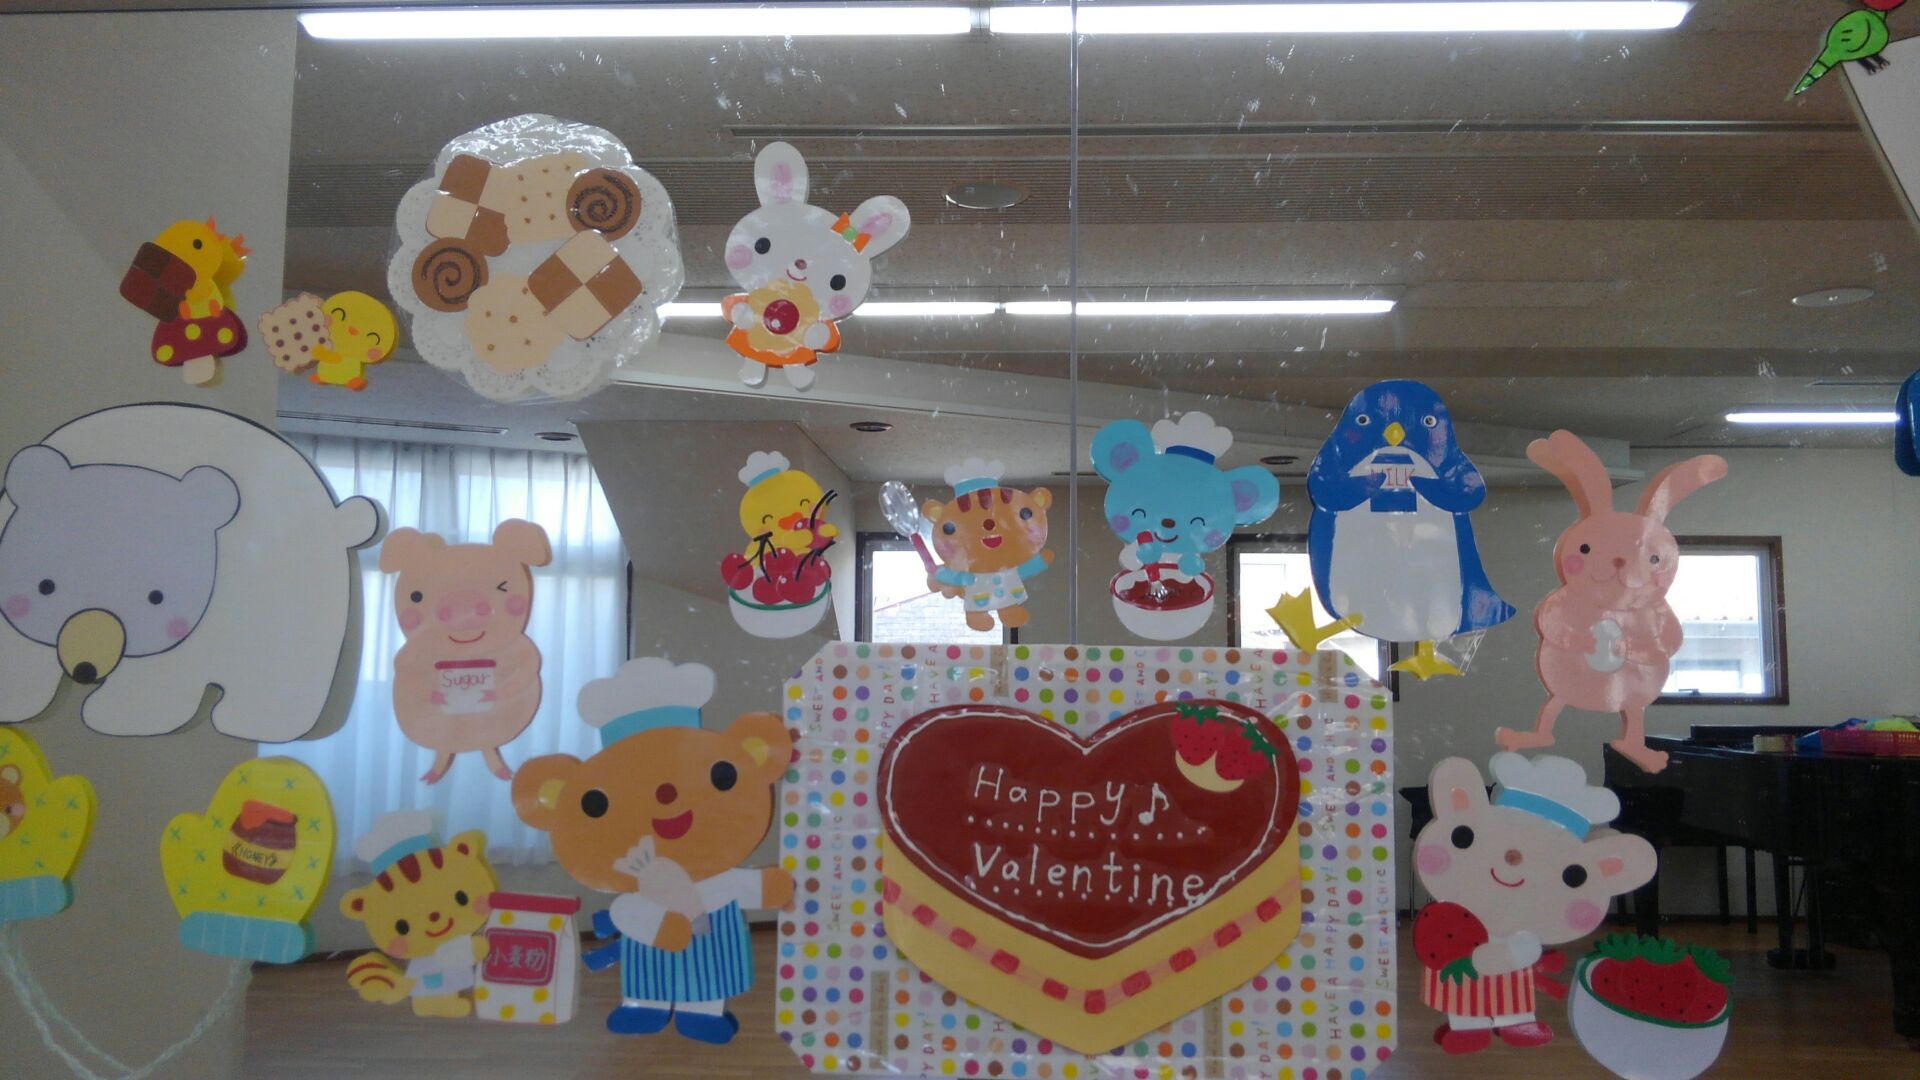 教室壁面に貼られた装飾イラスト。今度はうってかわって動物さん達がお菓子作りをしています。真ん中には「Happy Valentine」と書かれたケーキがあります。